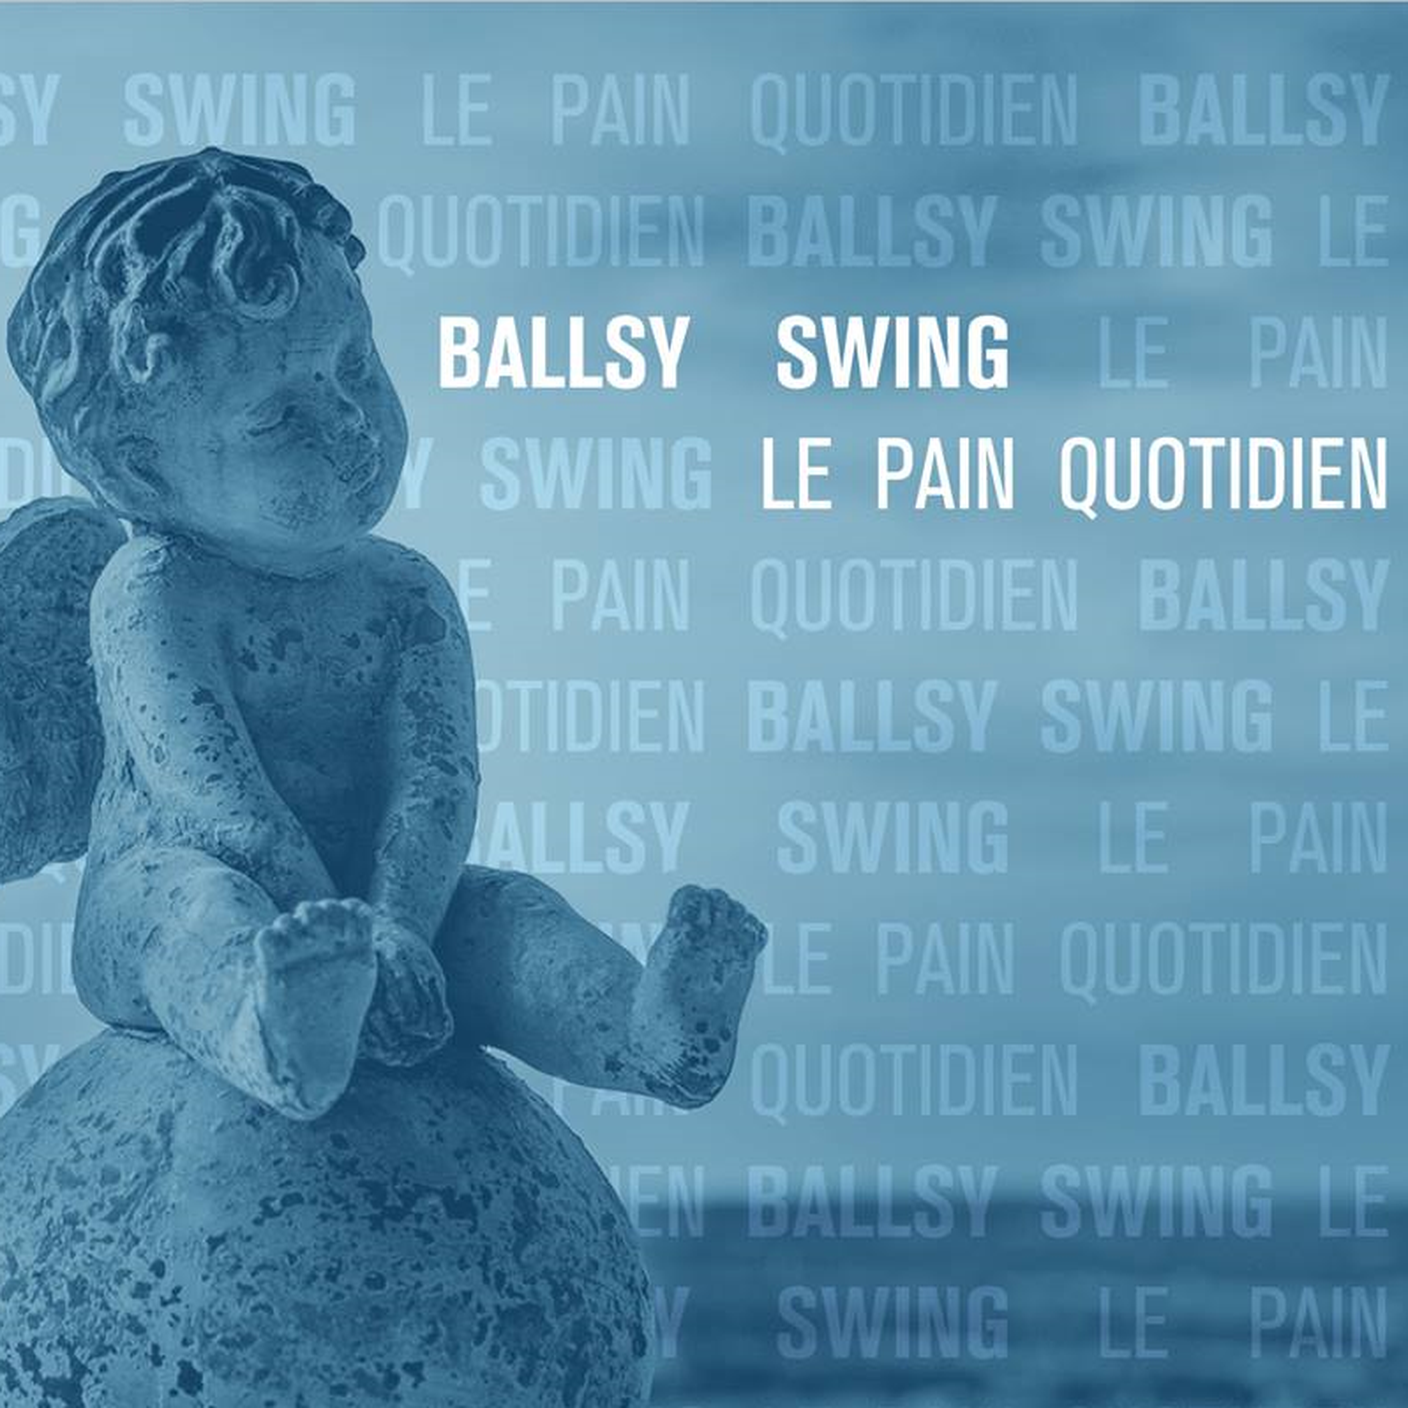 Ballsy Swing - "Le Pain Quotidien" (estratto copertina)